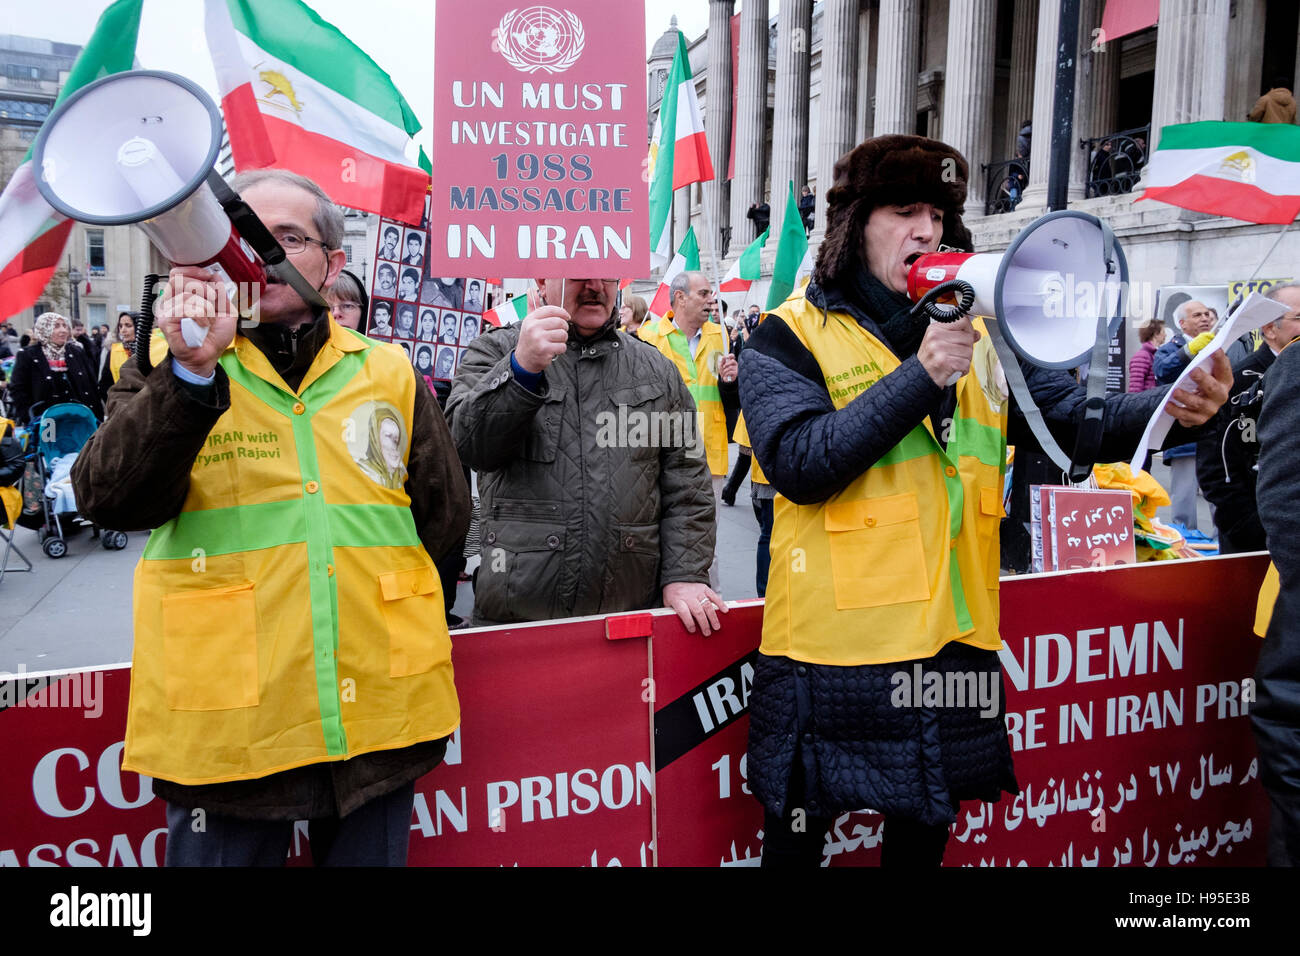 Manifestanti iraniani protestare contro la detenzione e l'uccisione di prigionieri politici da parte delle autorità in Iran. Londra, Regno Unito. Foto Stock